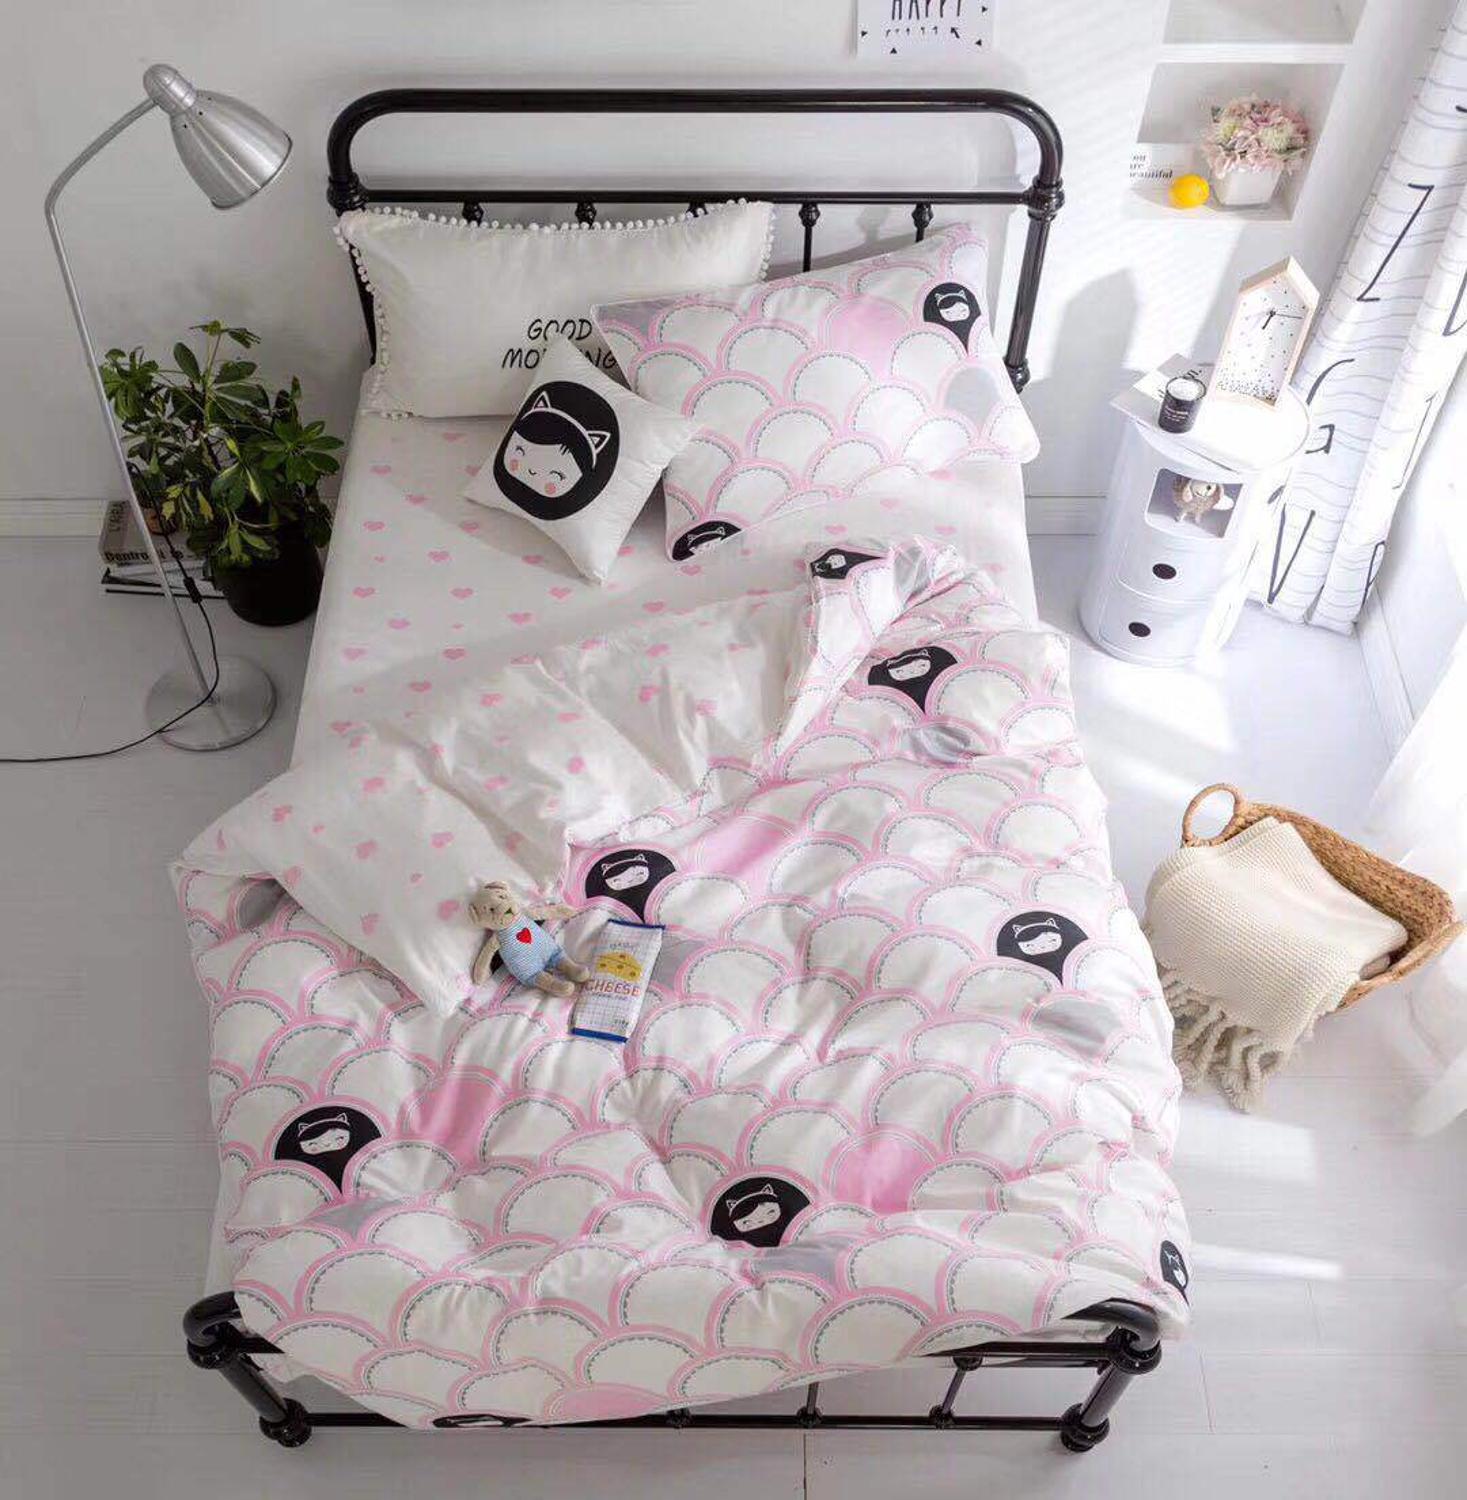 3 stk baby sengetøj sæt til dreng pige tegneserie blød bomuld krybbe sengelinned sæt inkluderer pudebetræk lagen dynebetræk ingen fyldstof